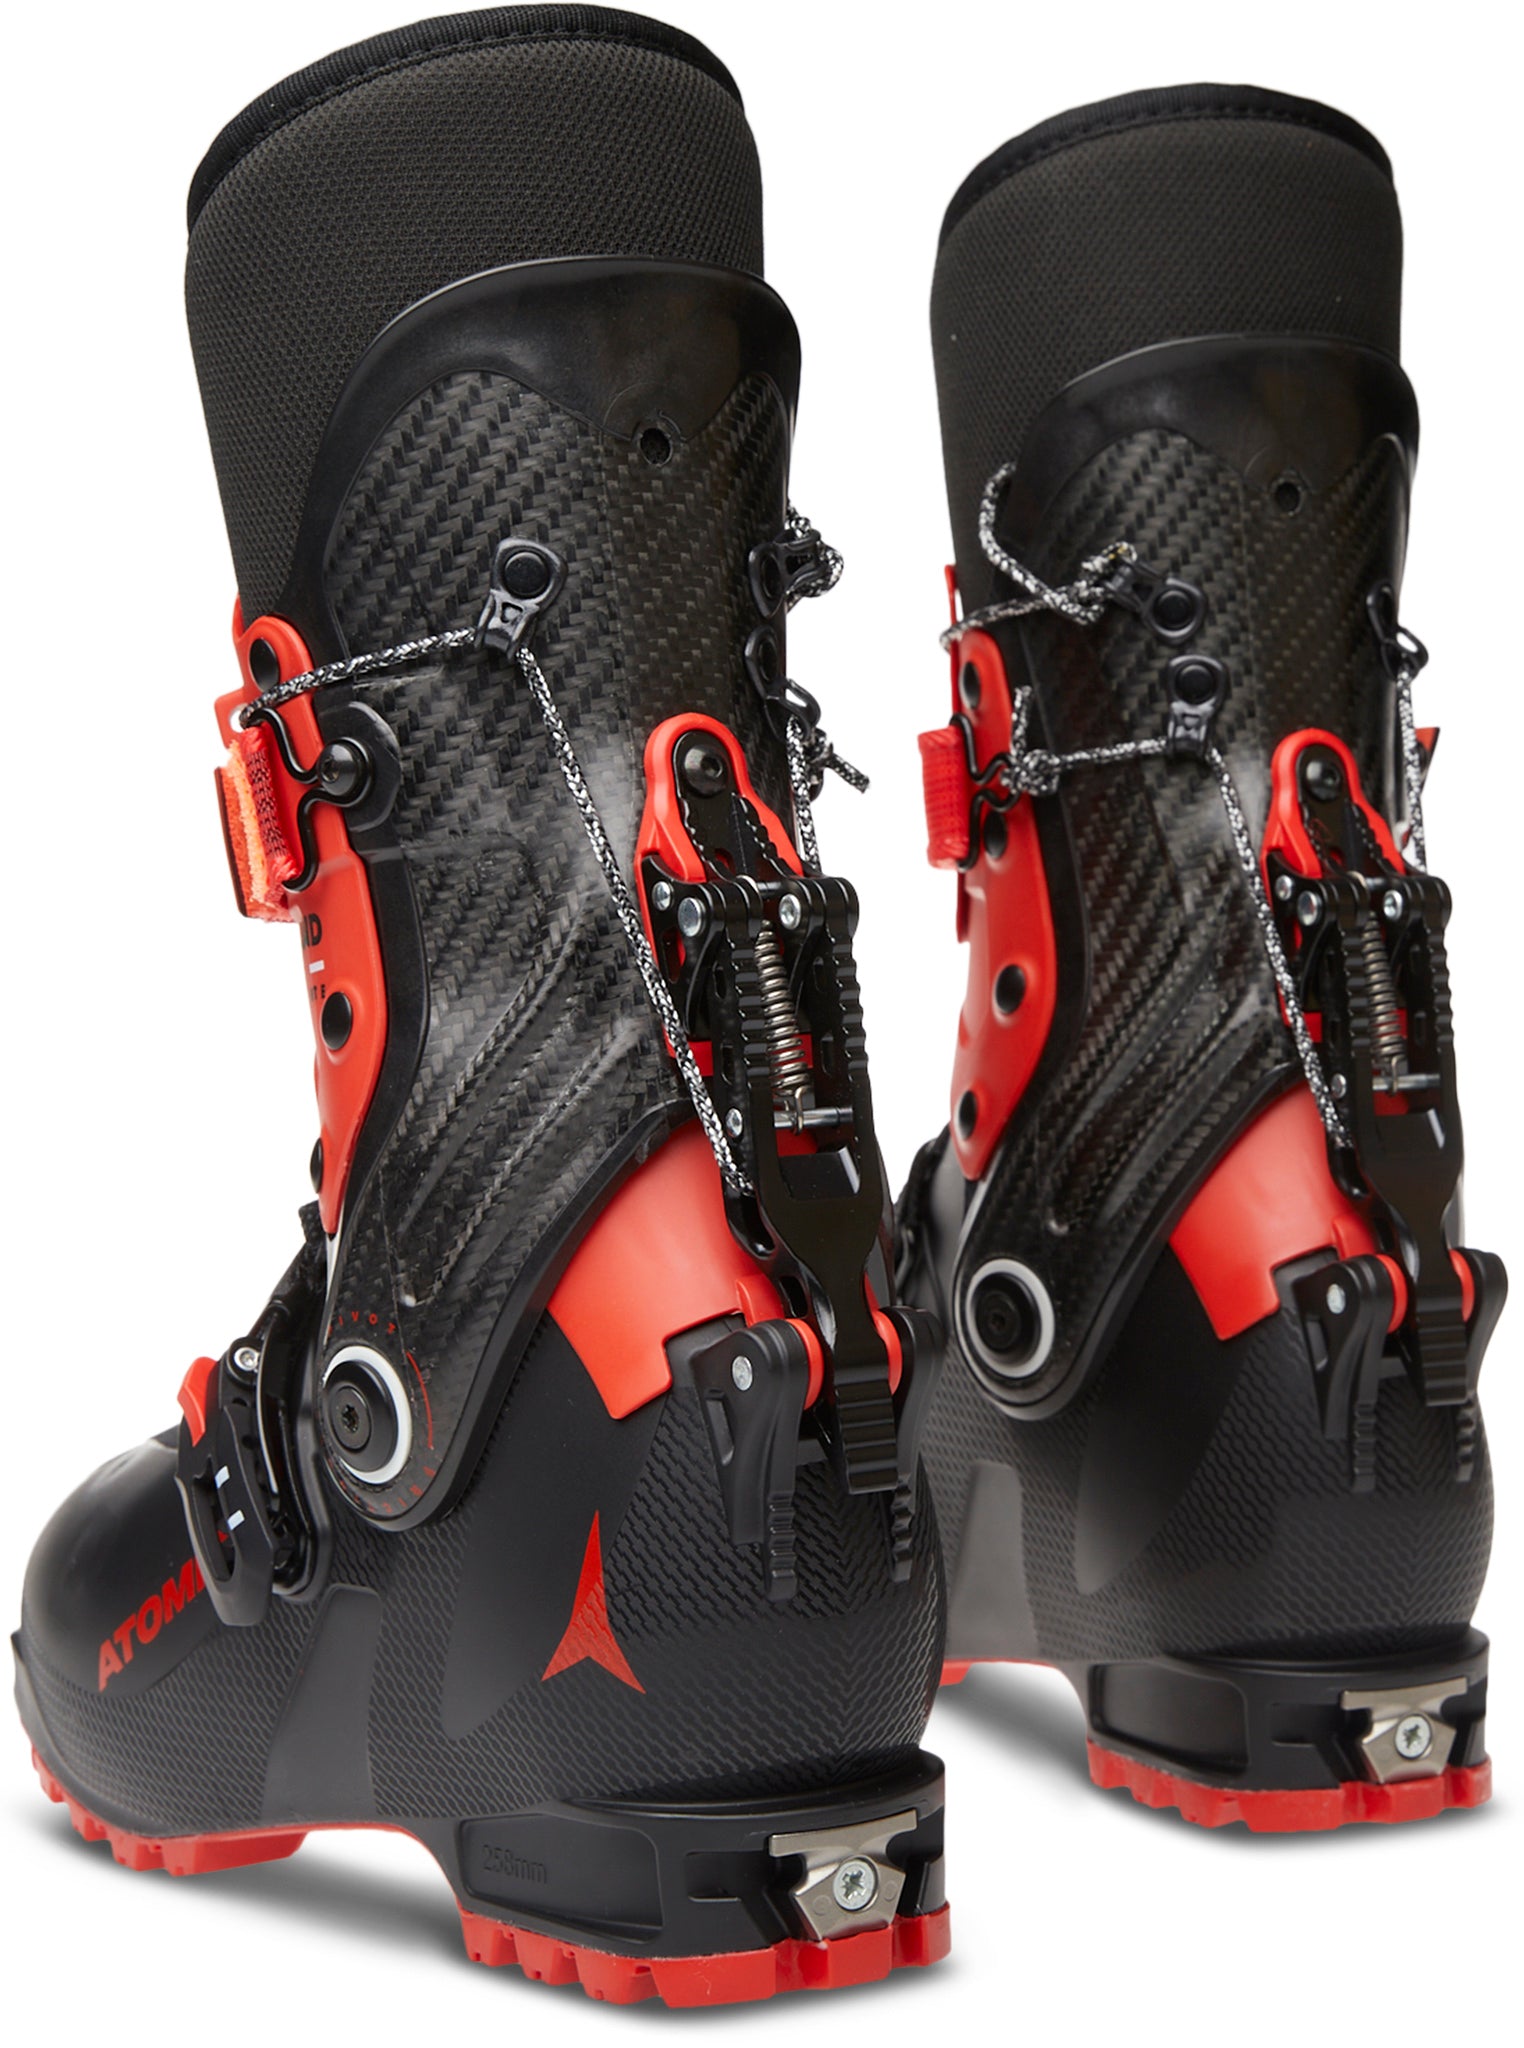 Atomic Backland Ultimate Ski Boots - Men's